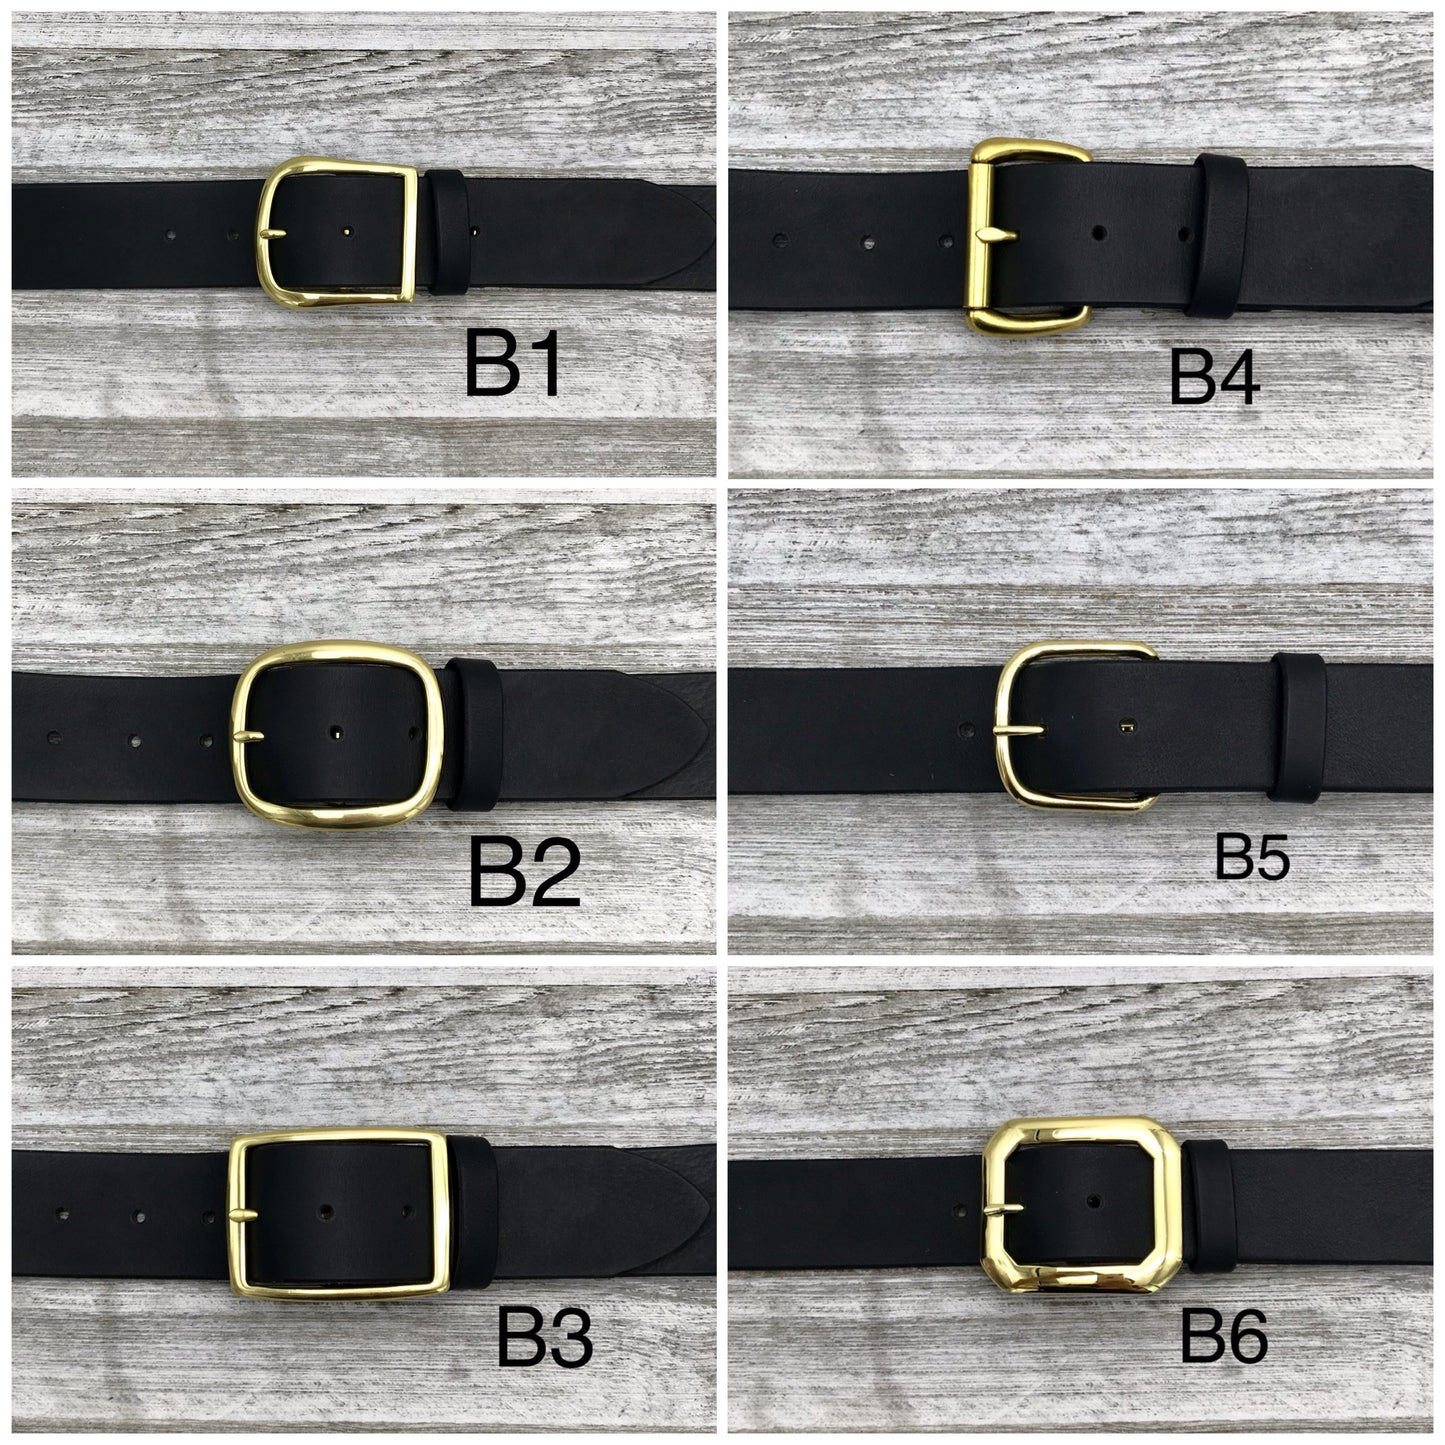 Dk. Brown Leather Belt (1 3/8”)